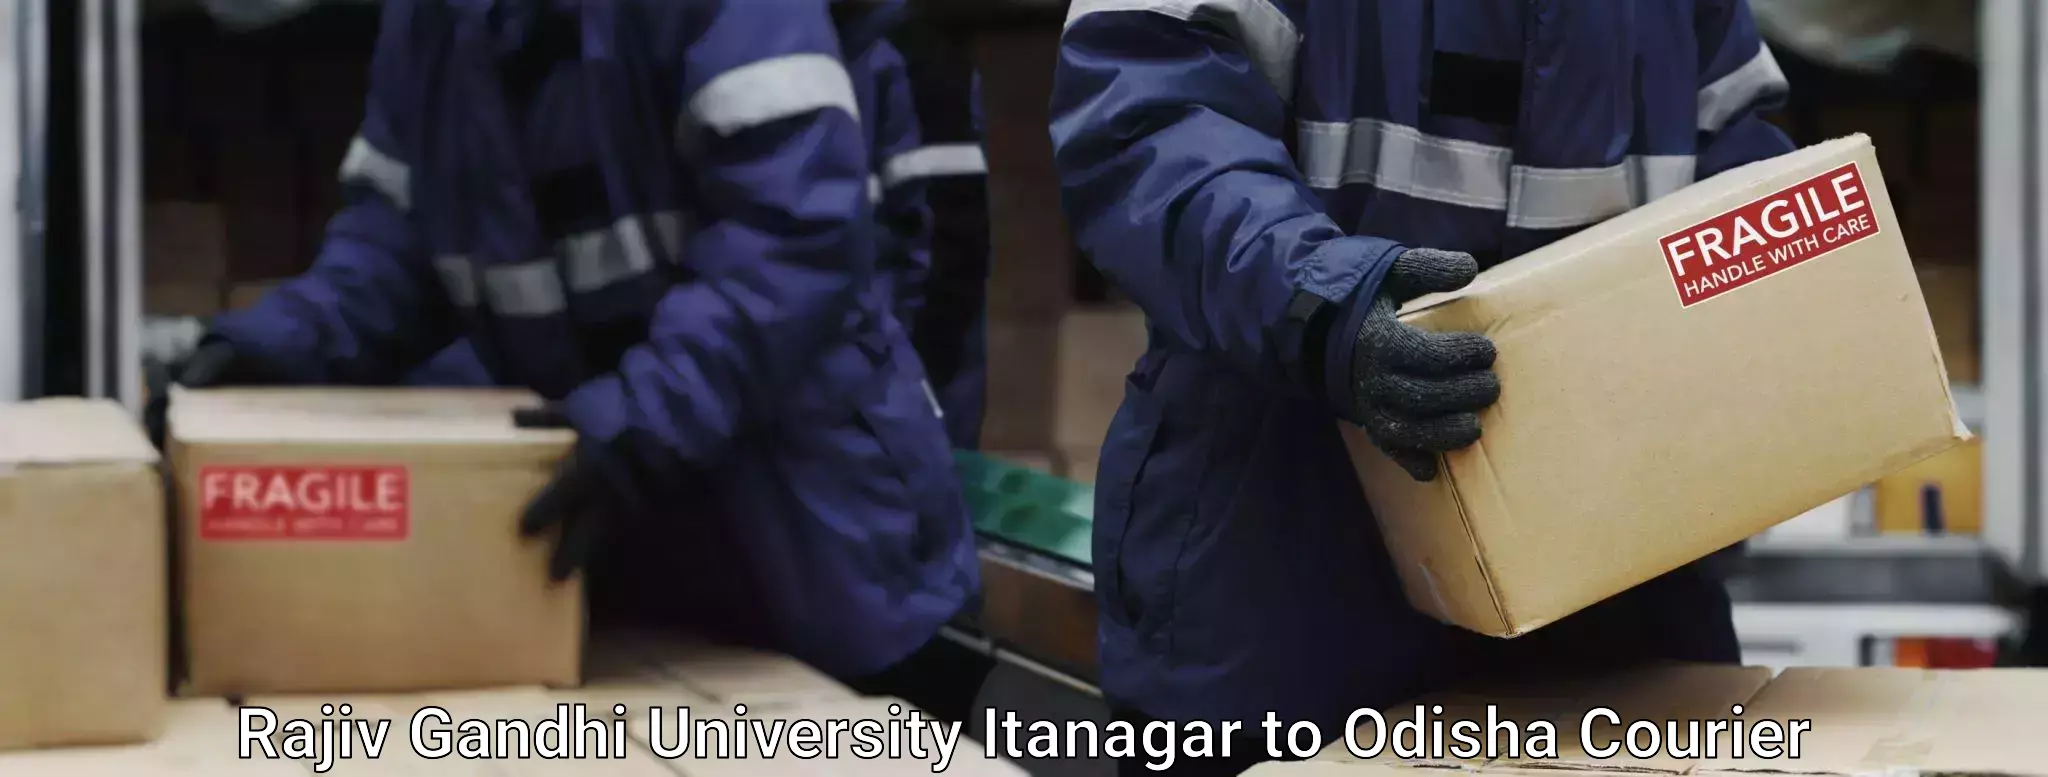 Baggage courier pricing Rajiv Gandhi University Itanagar to Agarpada